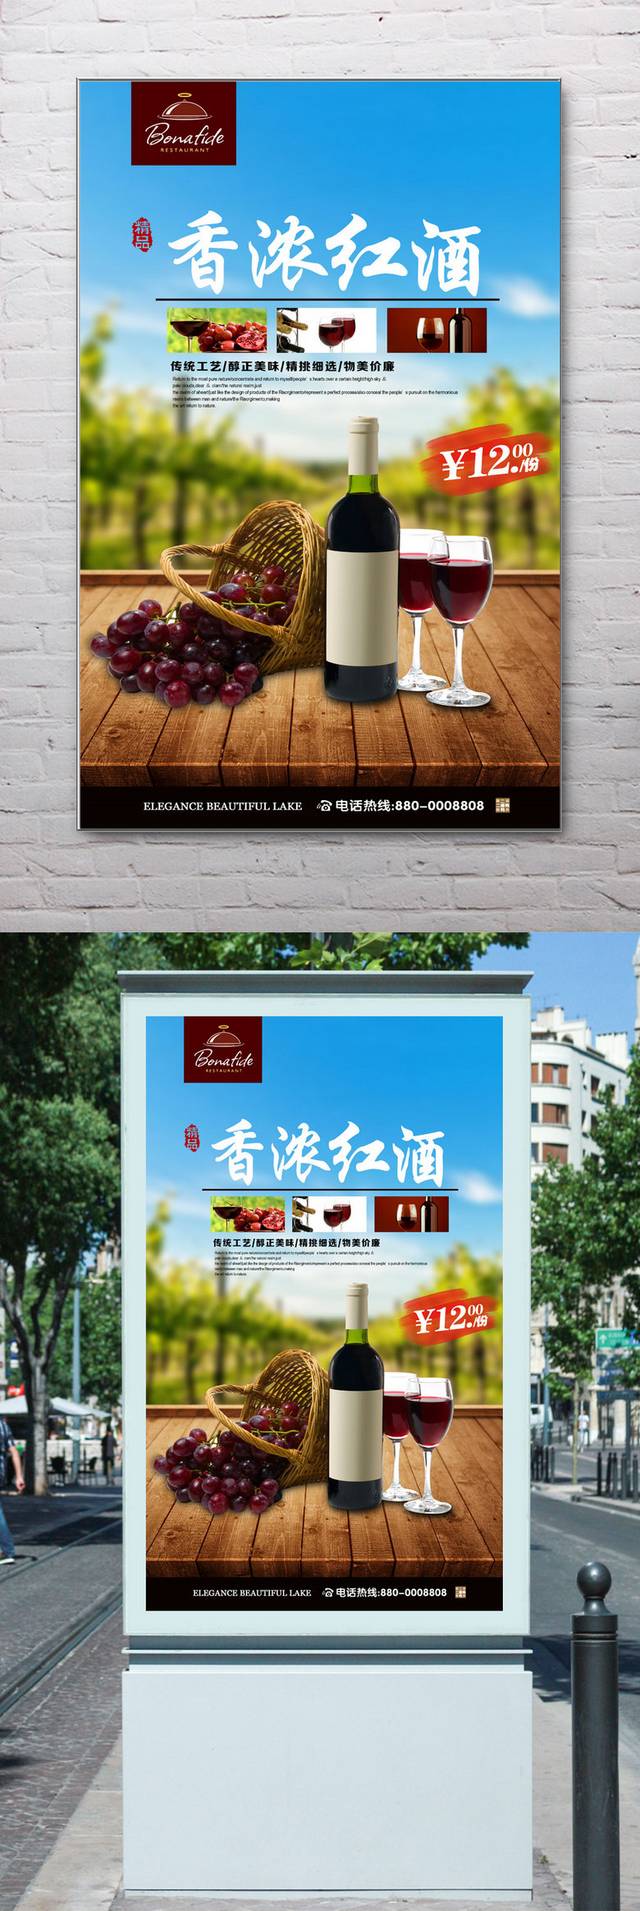 高清红酒宣传海报设计模板